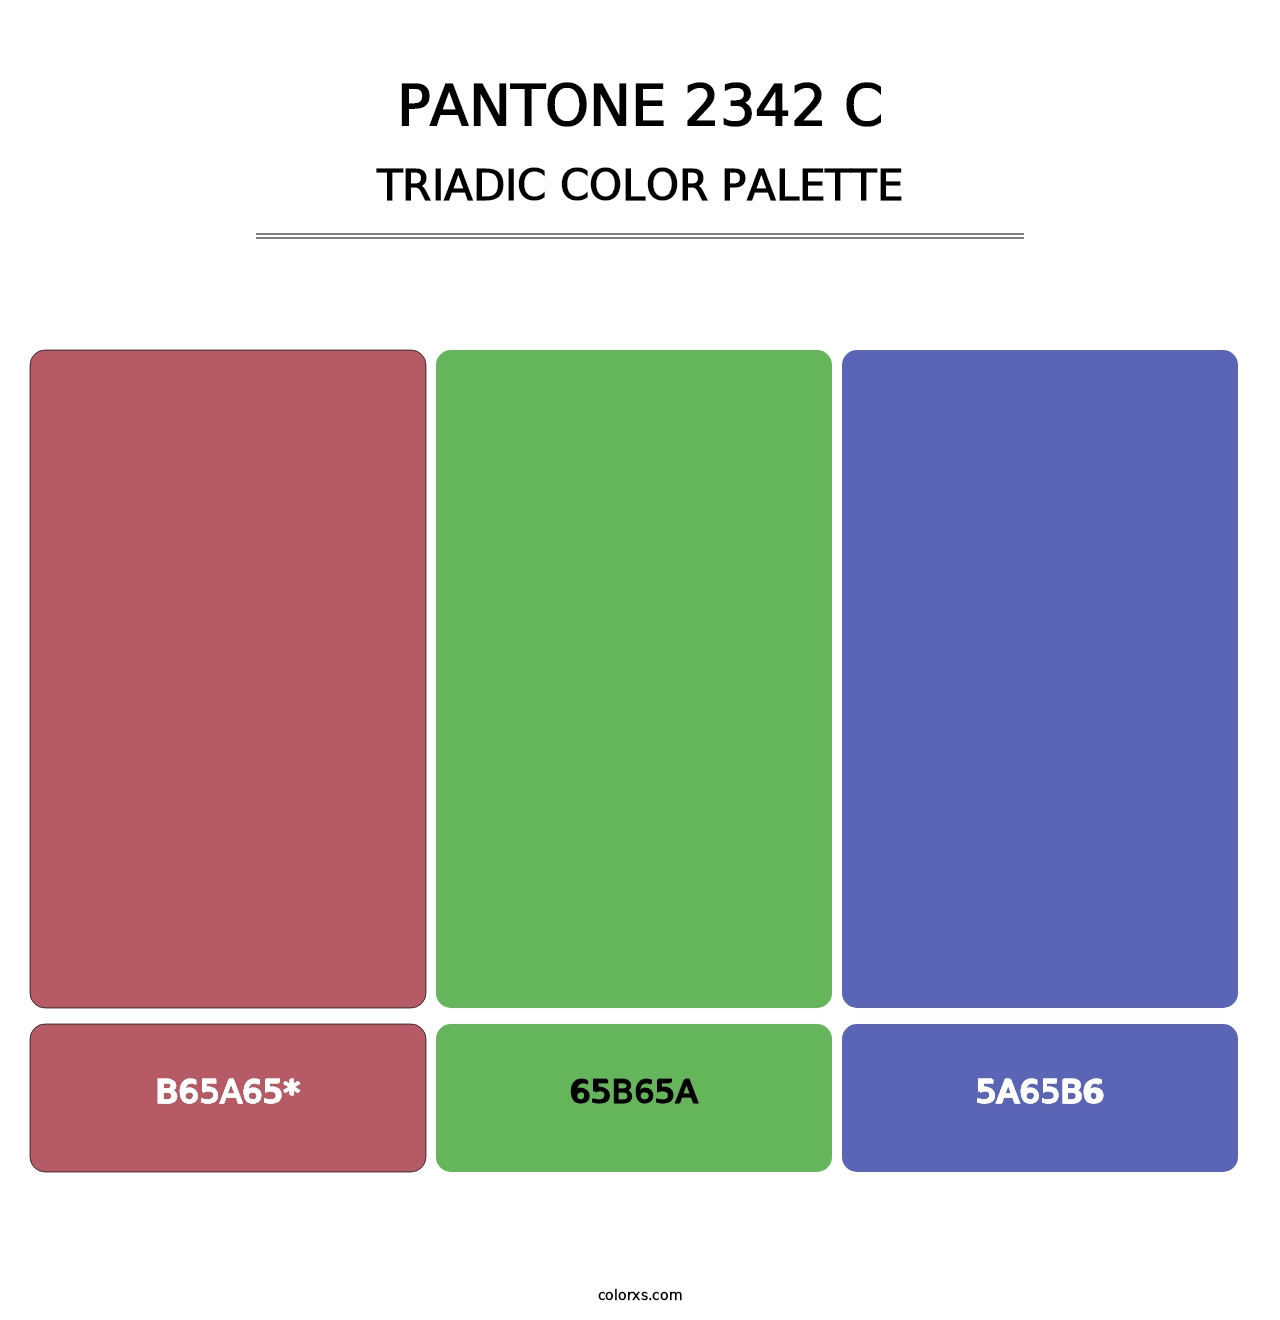 PANTONE 2342 C - Triadic Color Palette